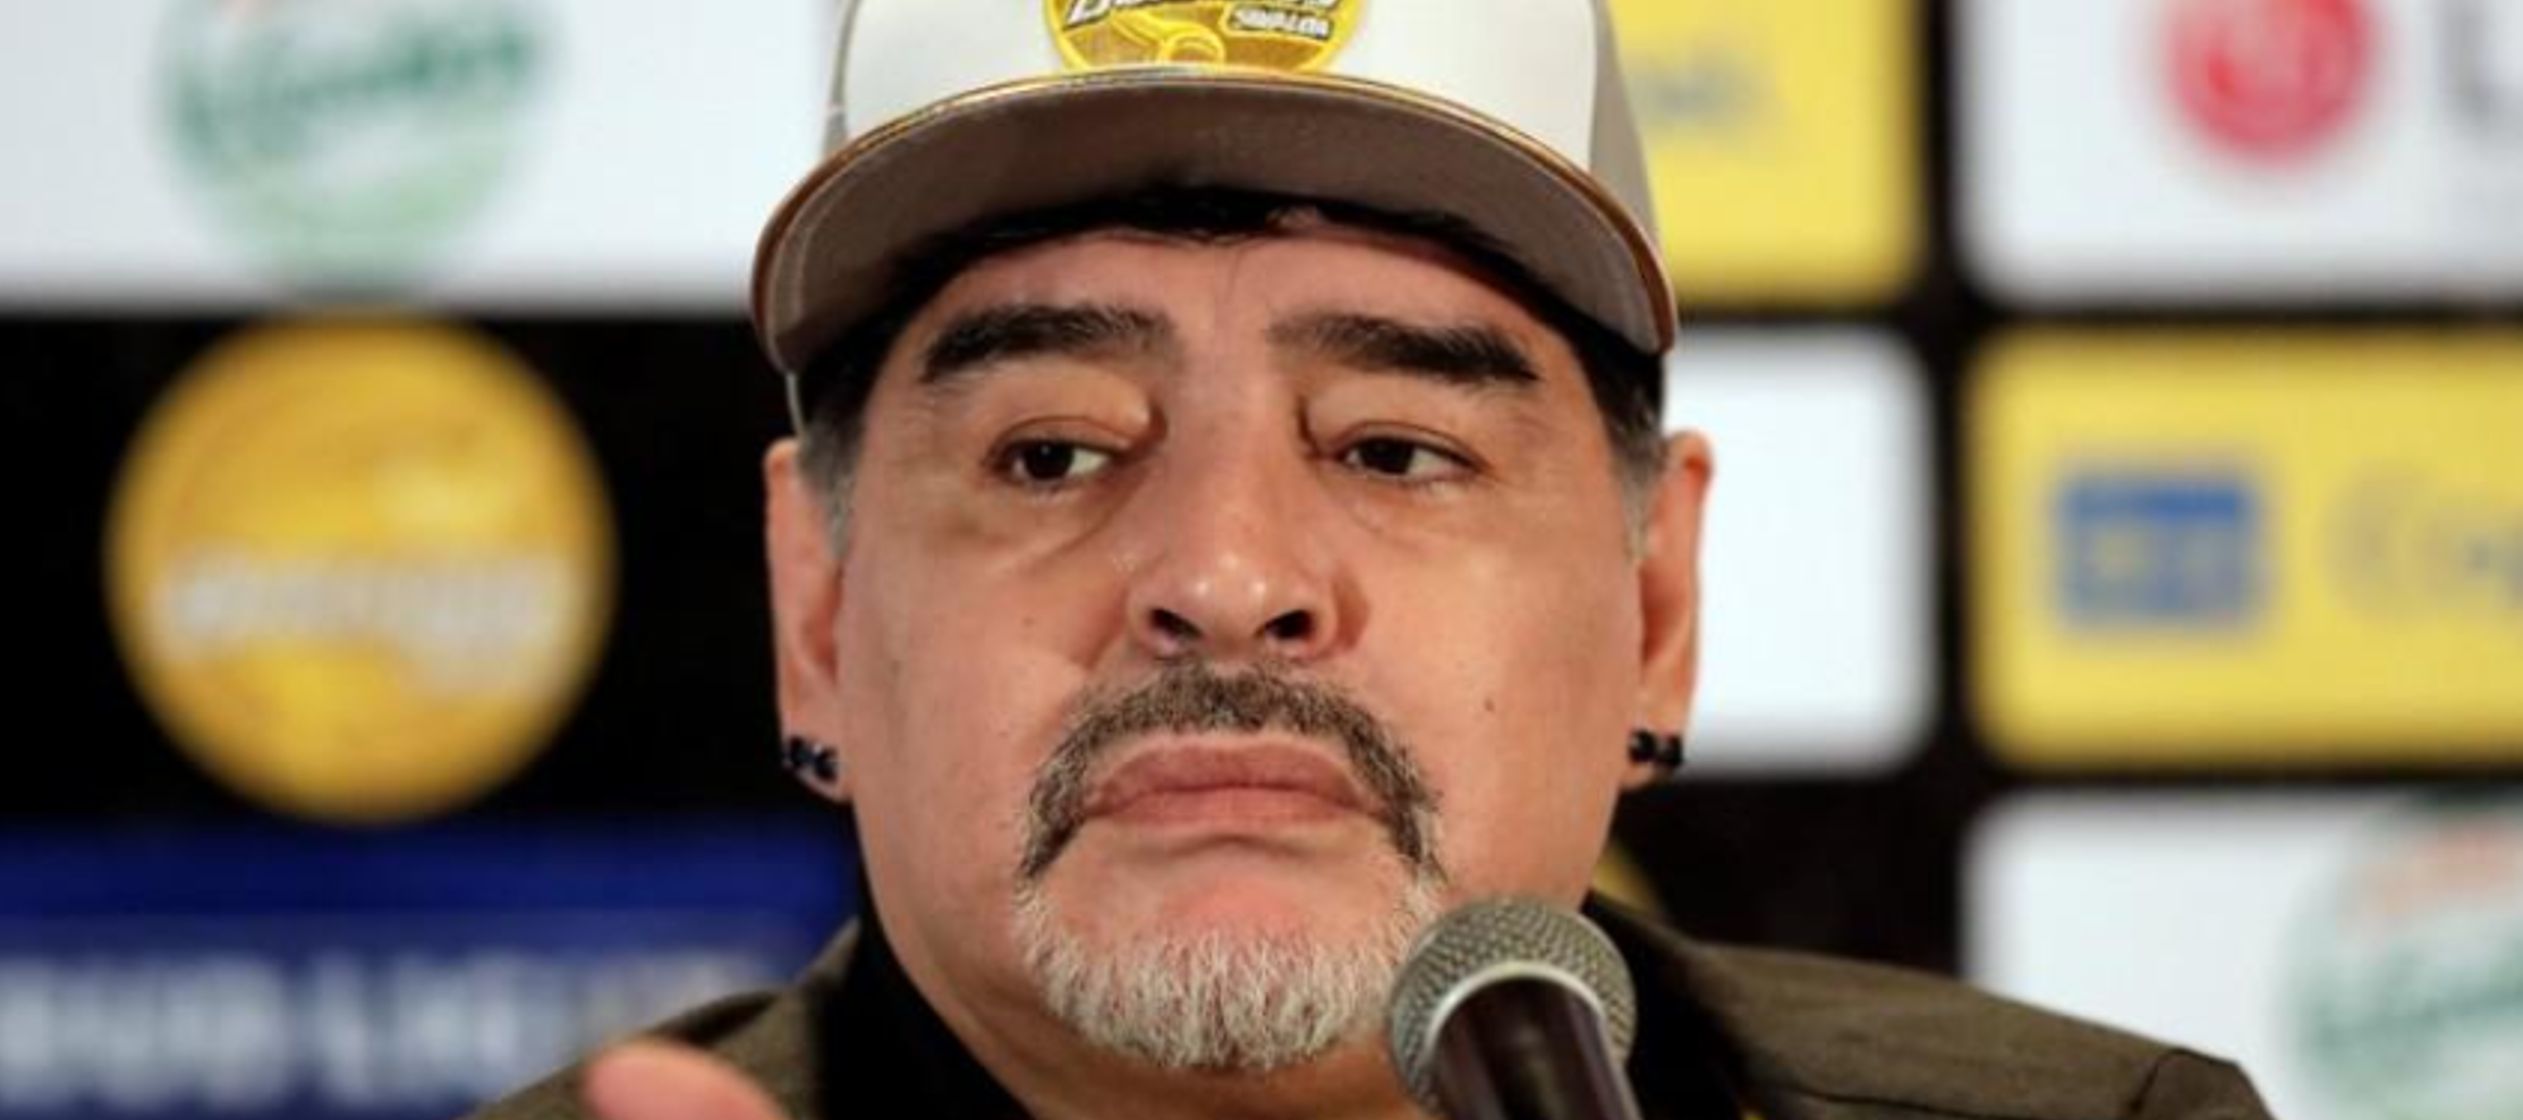 Maradona, campeón del mundo con su selección en 1986, fue designado el jueves de...